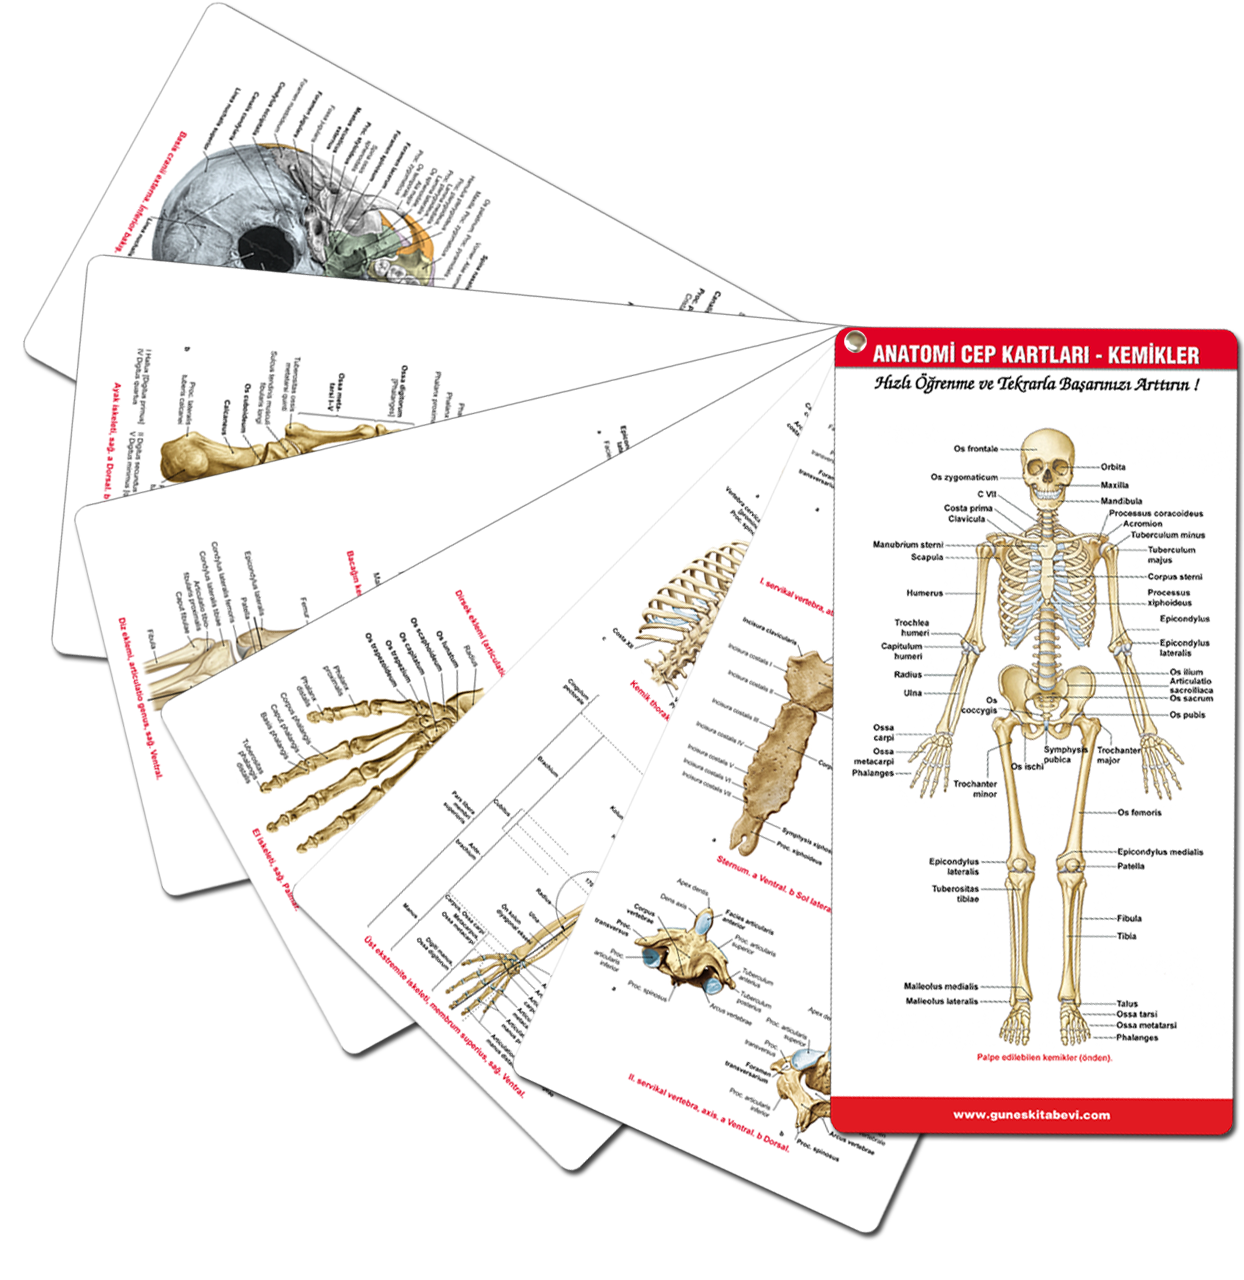 Anatomi Cep Kartları - Kemikler